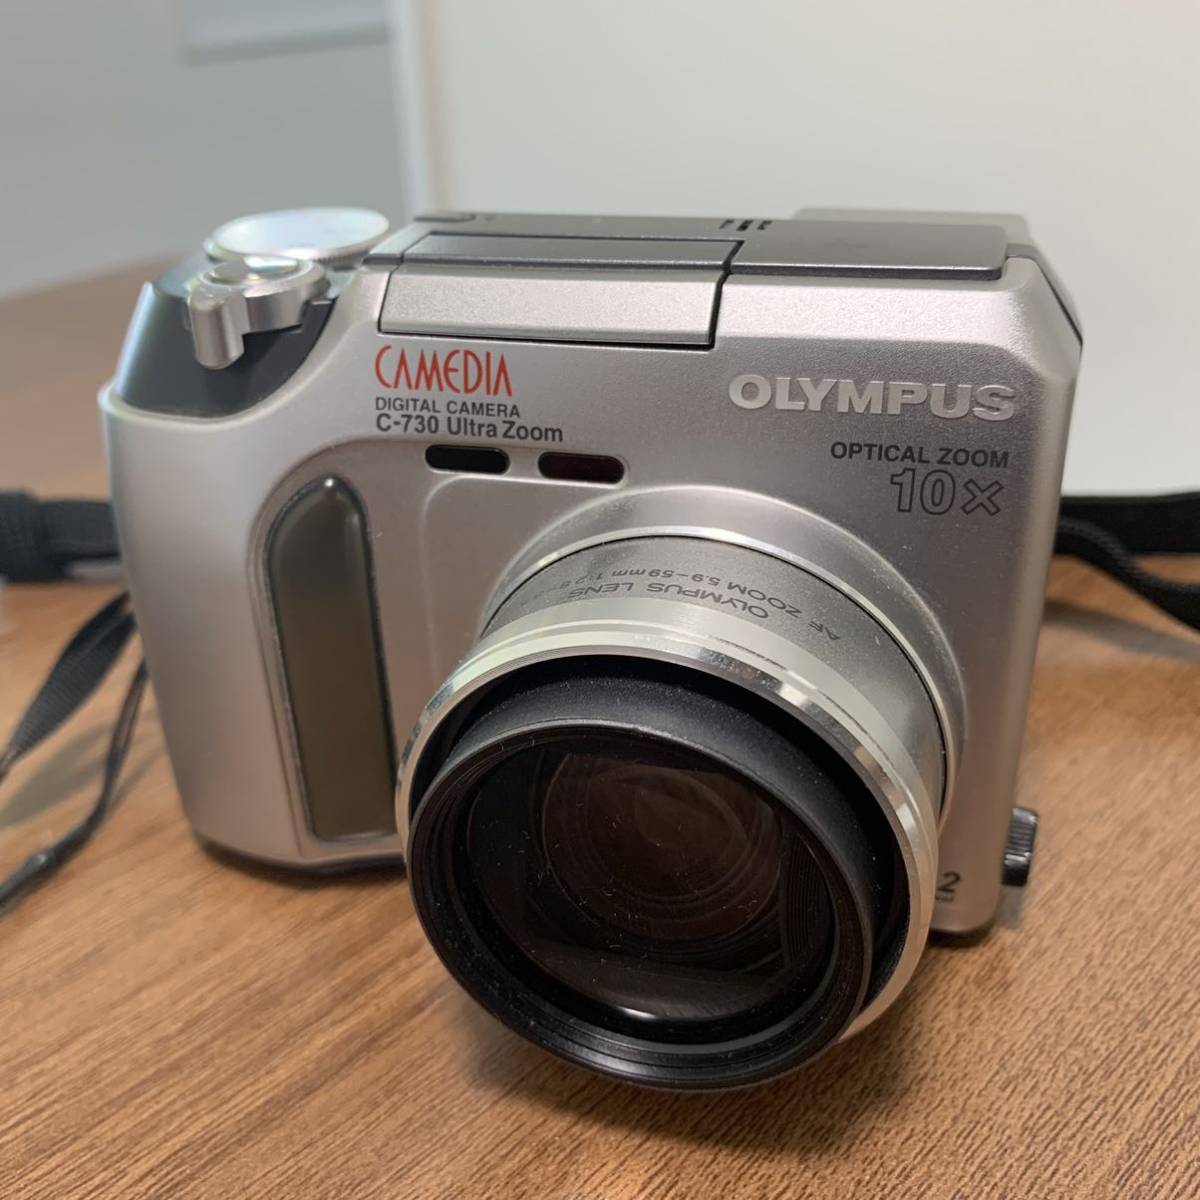 OLYMPUS オリンパス CAMEDIA C-730 Ultra Zoom コンパクトデジタルカメラ コンデジ ジャンク_画像1